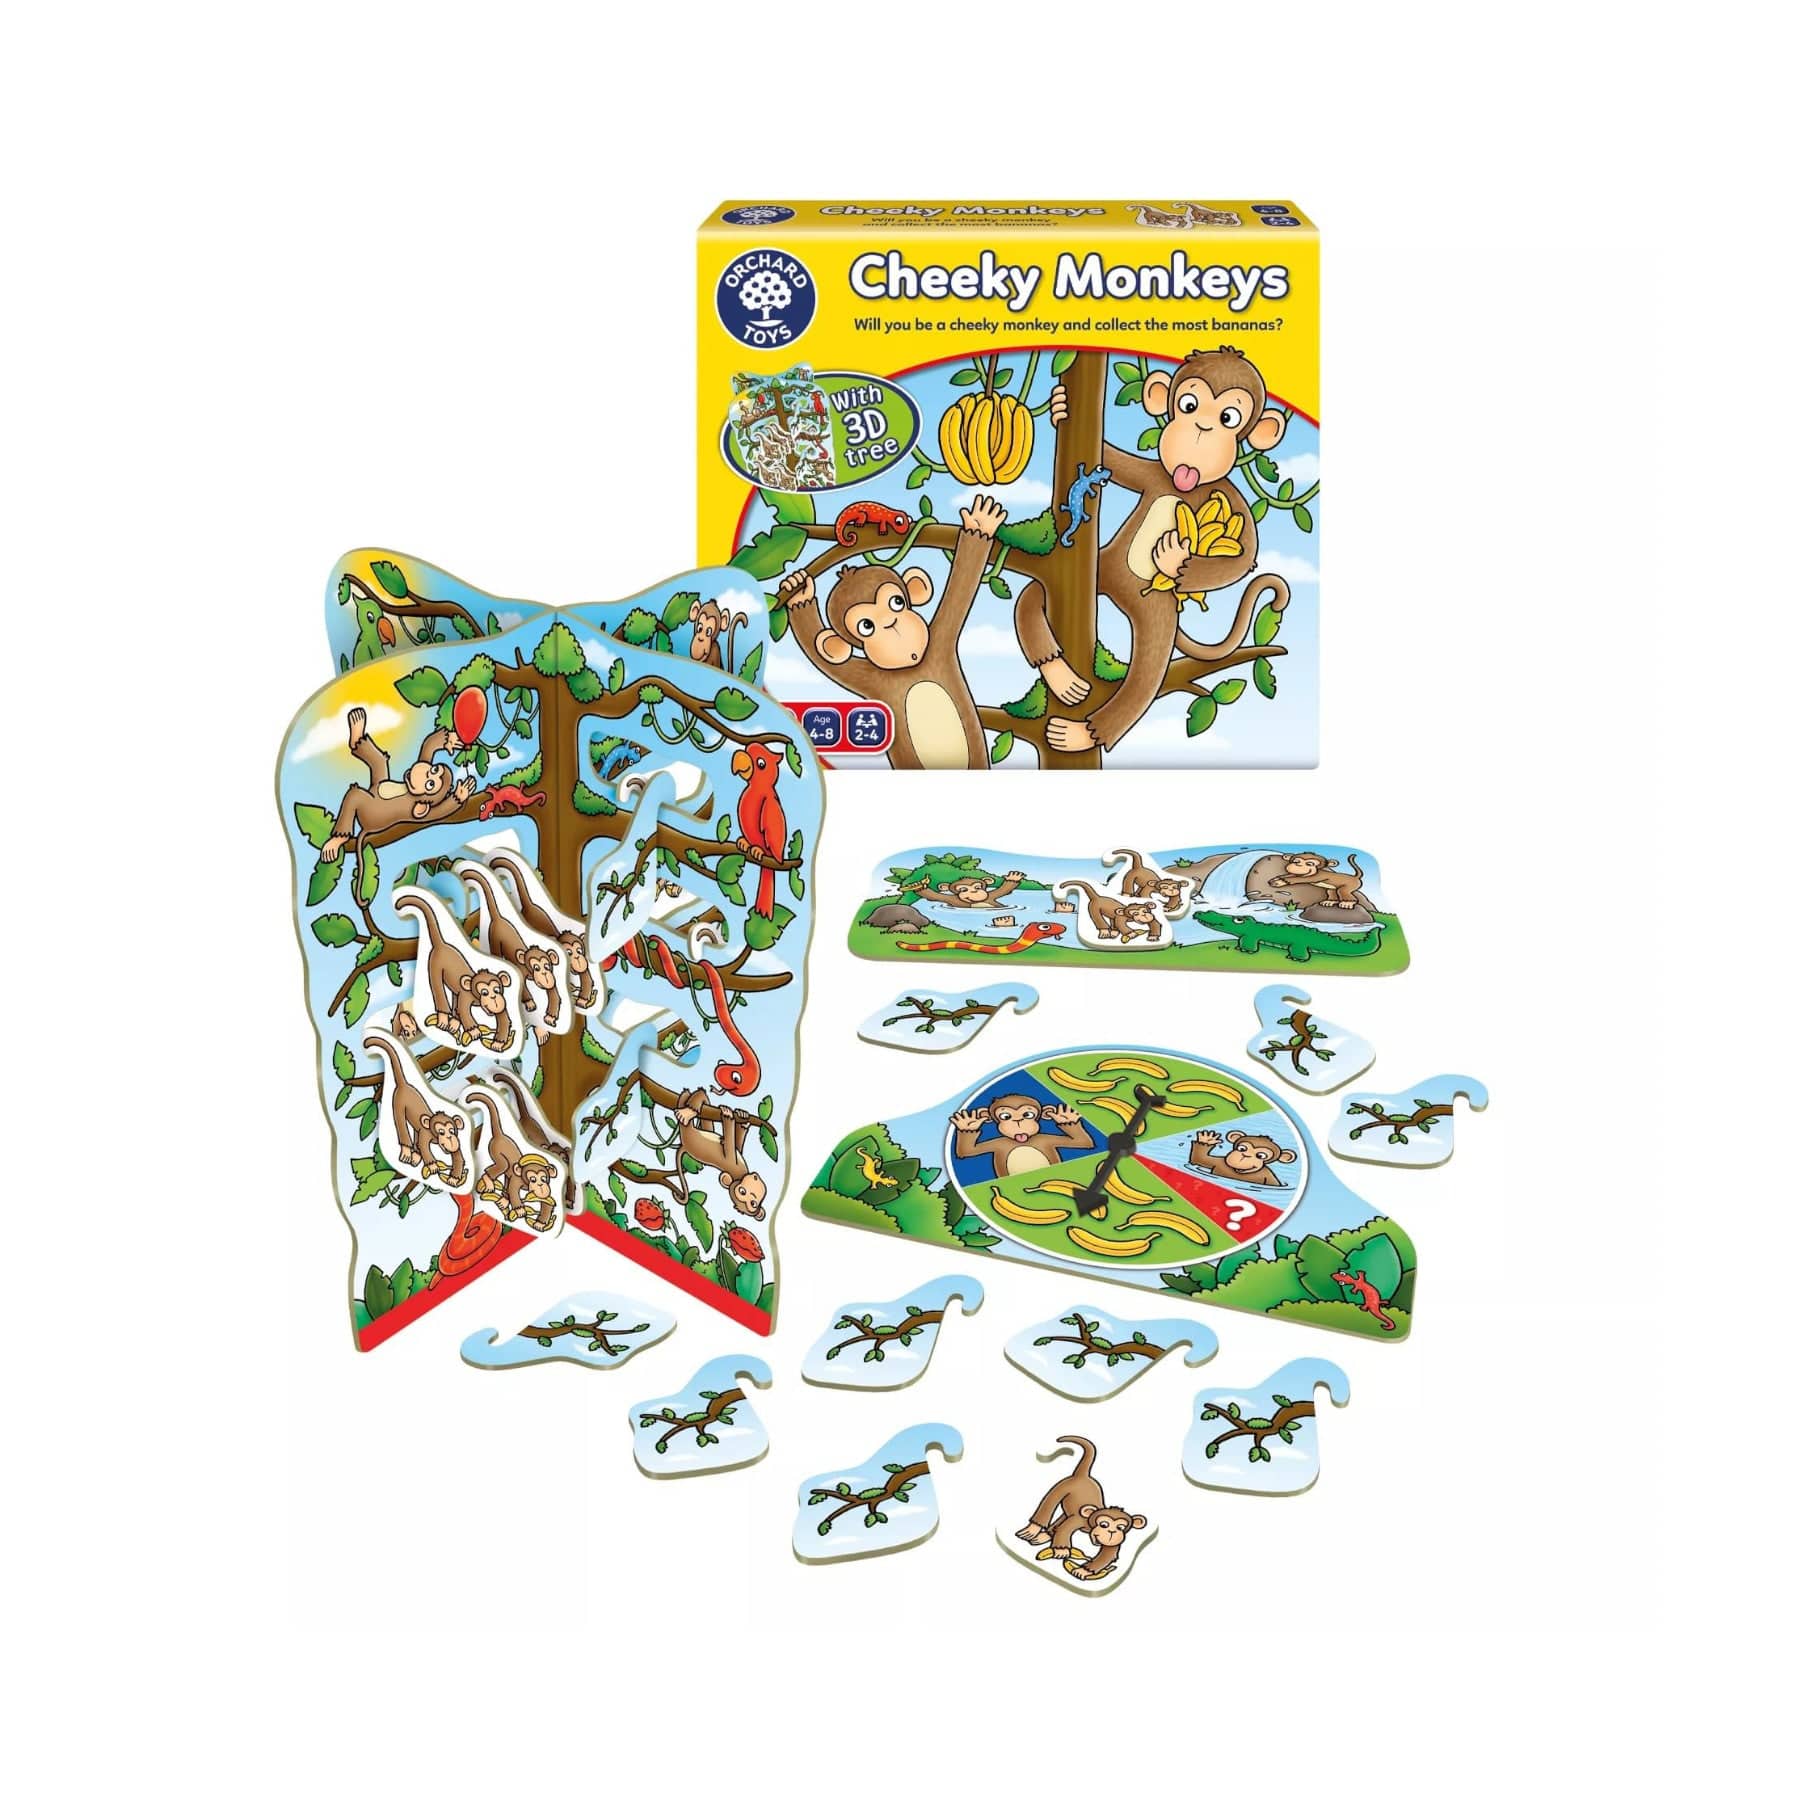 Cheeky monkeys game